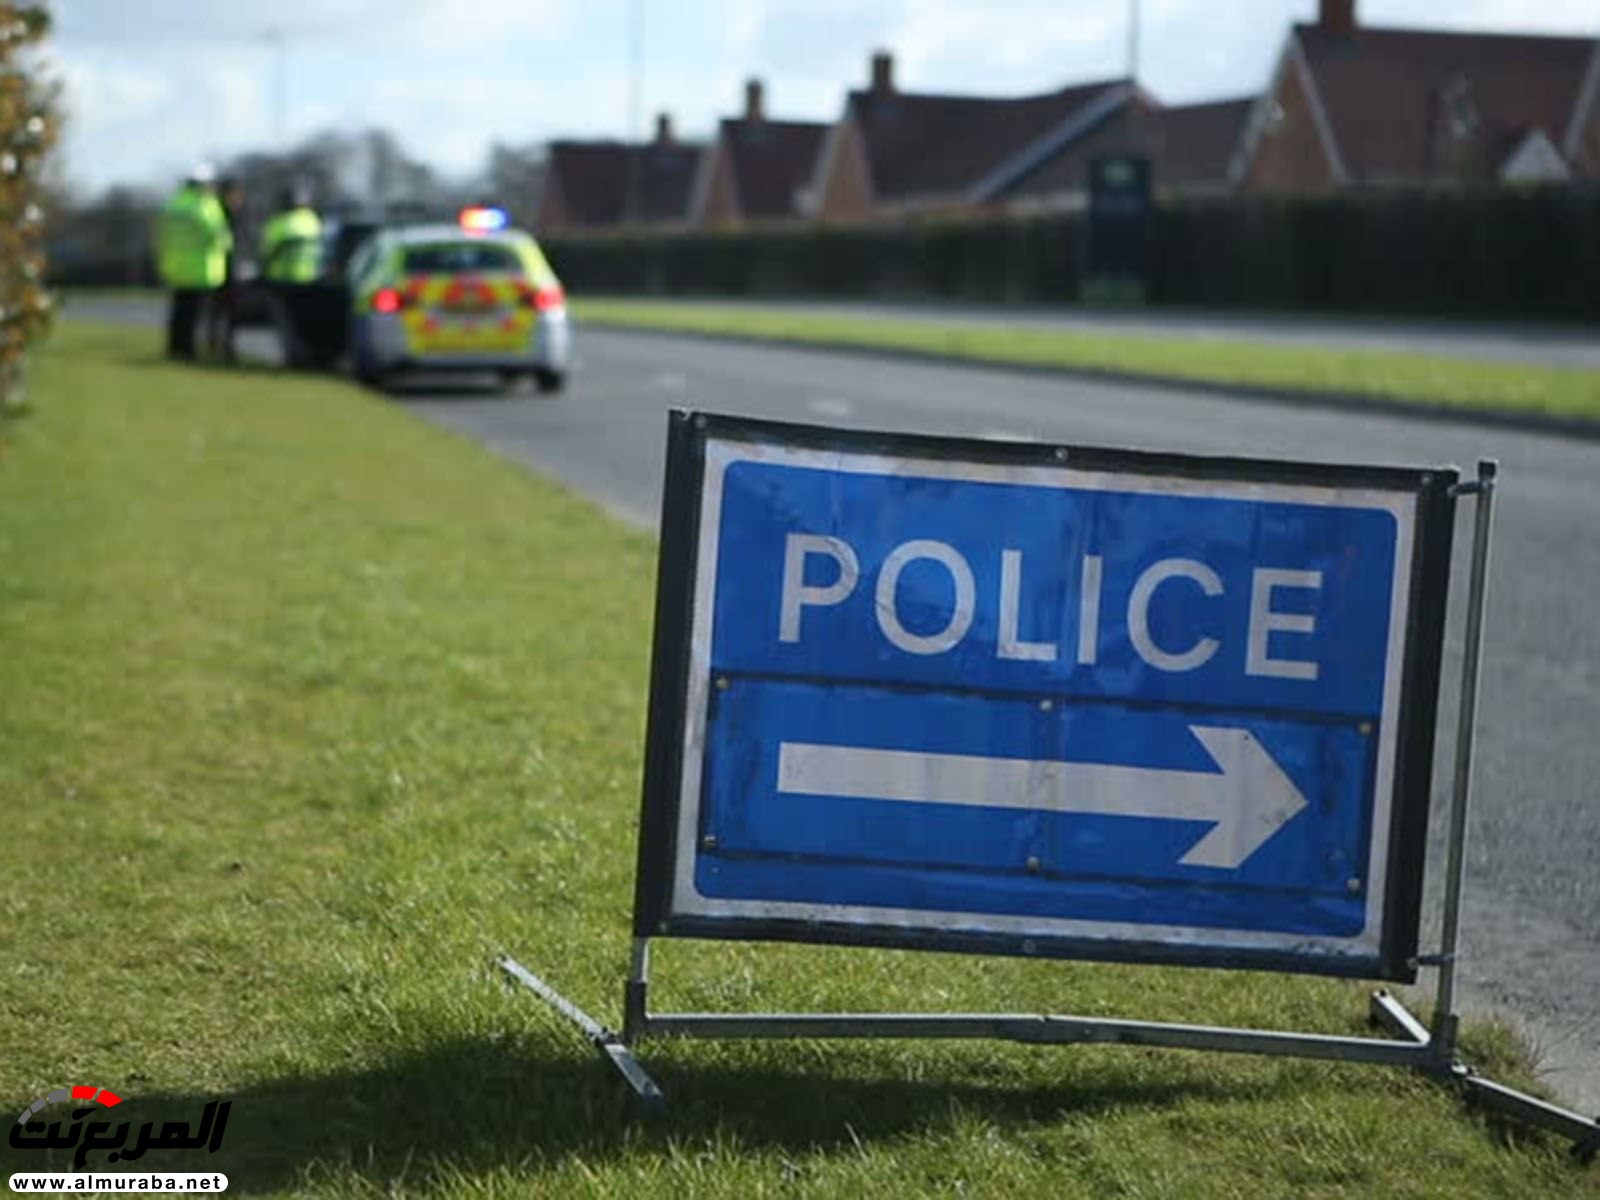 رئيس الشرطة البريطانية: تعدي السرعة القانونية بقدر 1 ميل نريد احتسابها "جريمة" 14